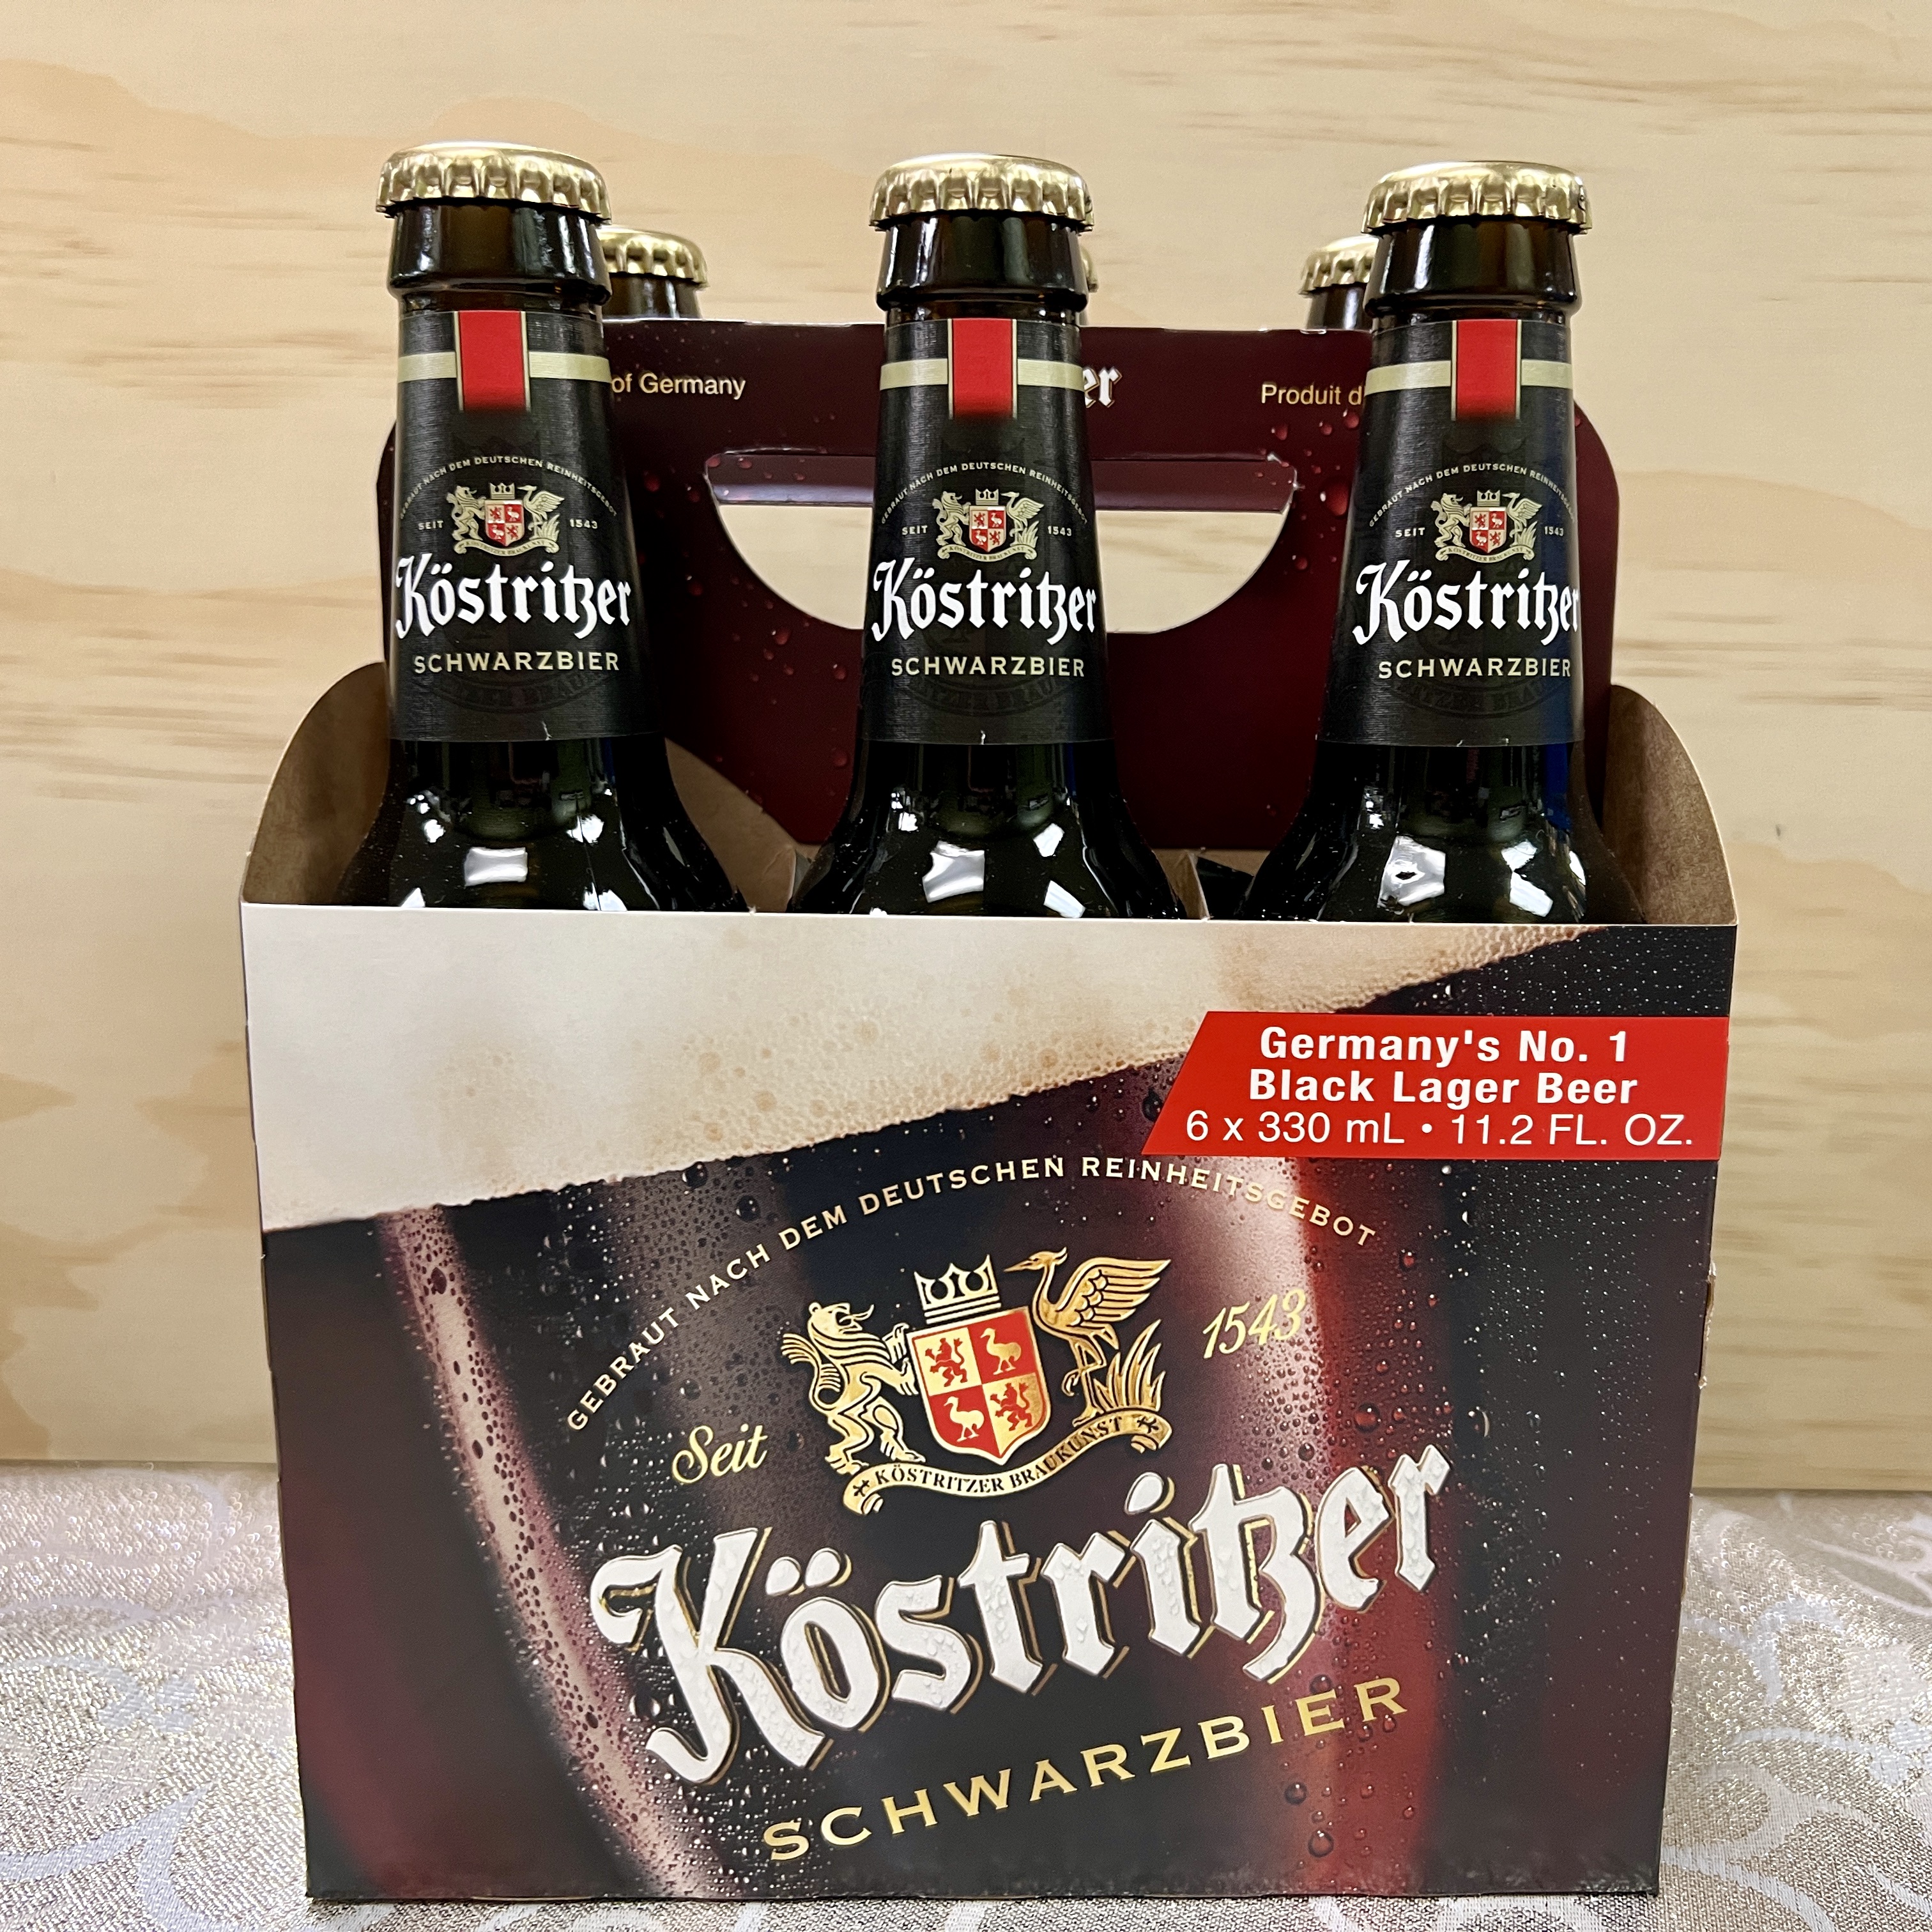 Kostritzer Schwarbier 6 x 12oz bottles